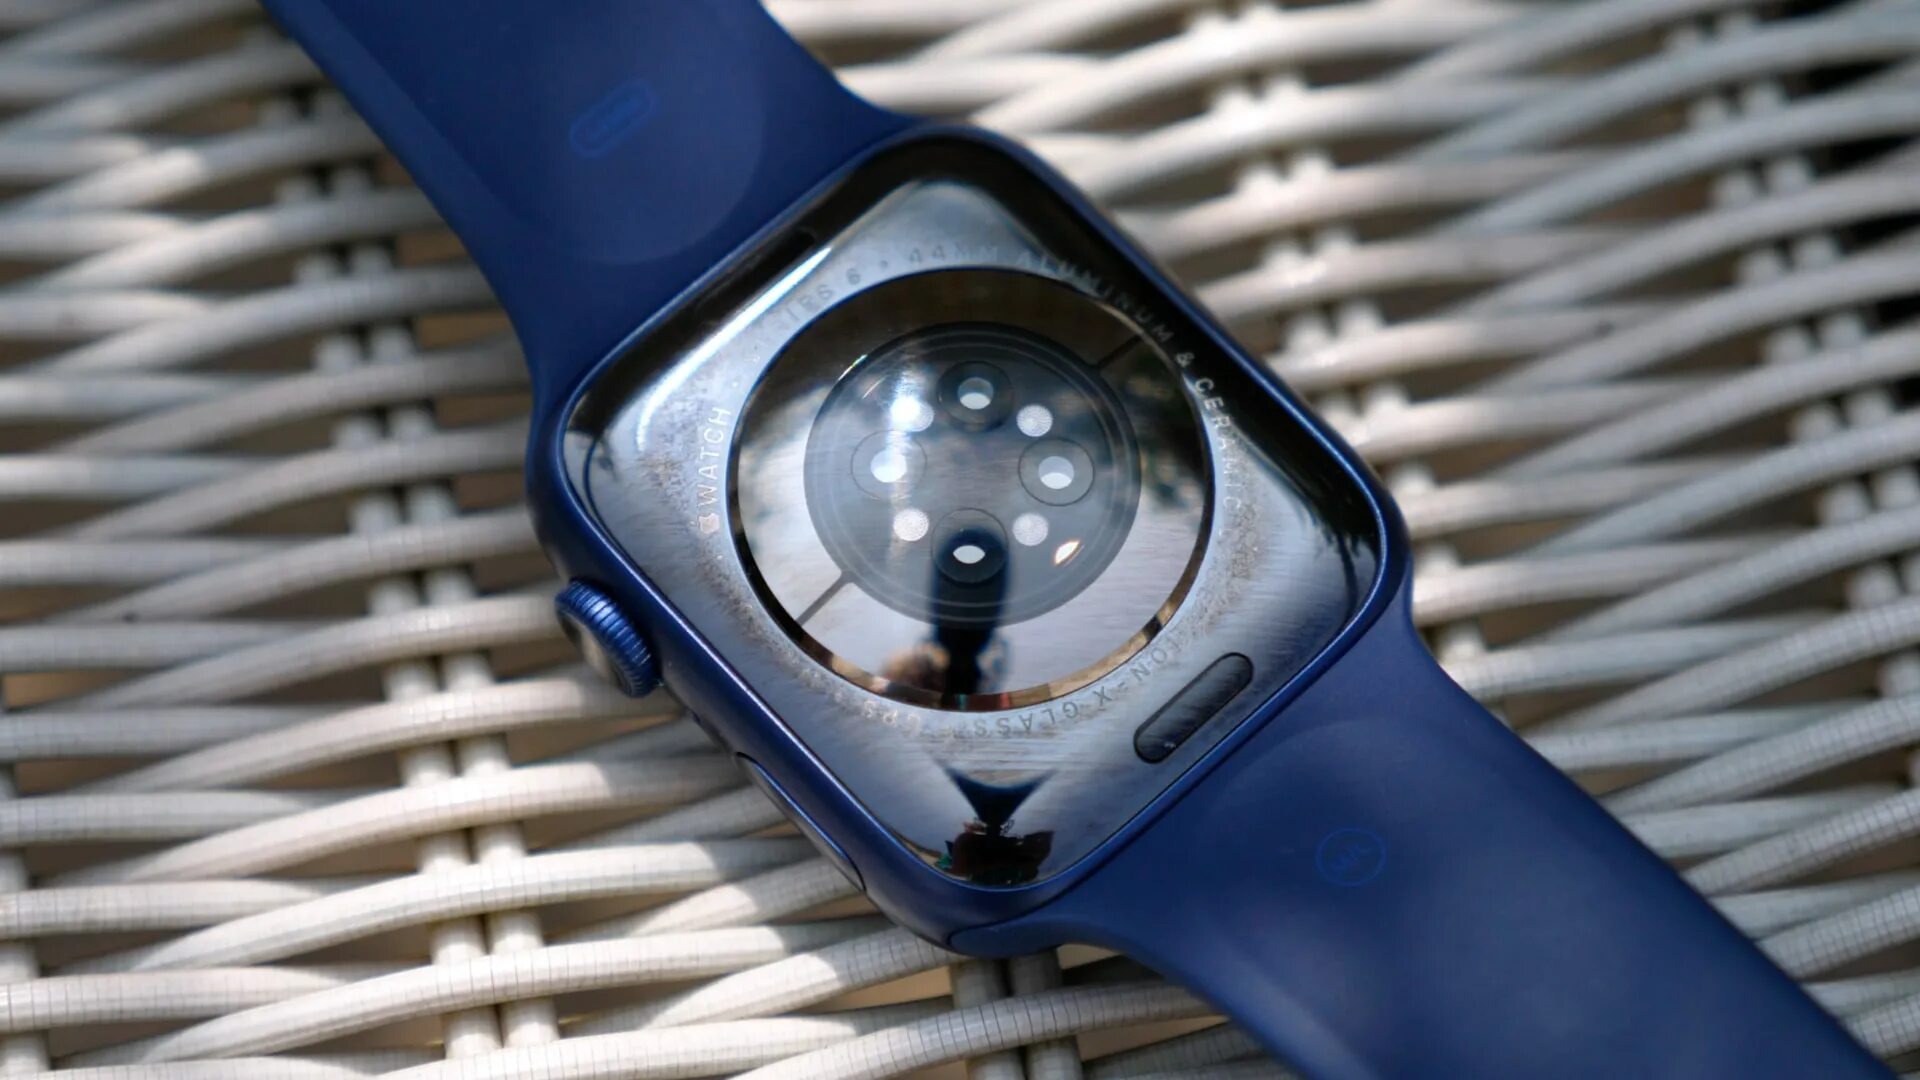 Apple series 6 44. Apple watch 6. Apple watch Series 6 44mm. Apple watch Series 6 44mm Blue. Apple watch 6 44 mm.